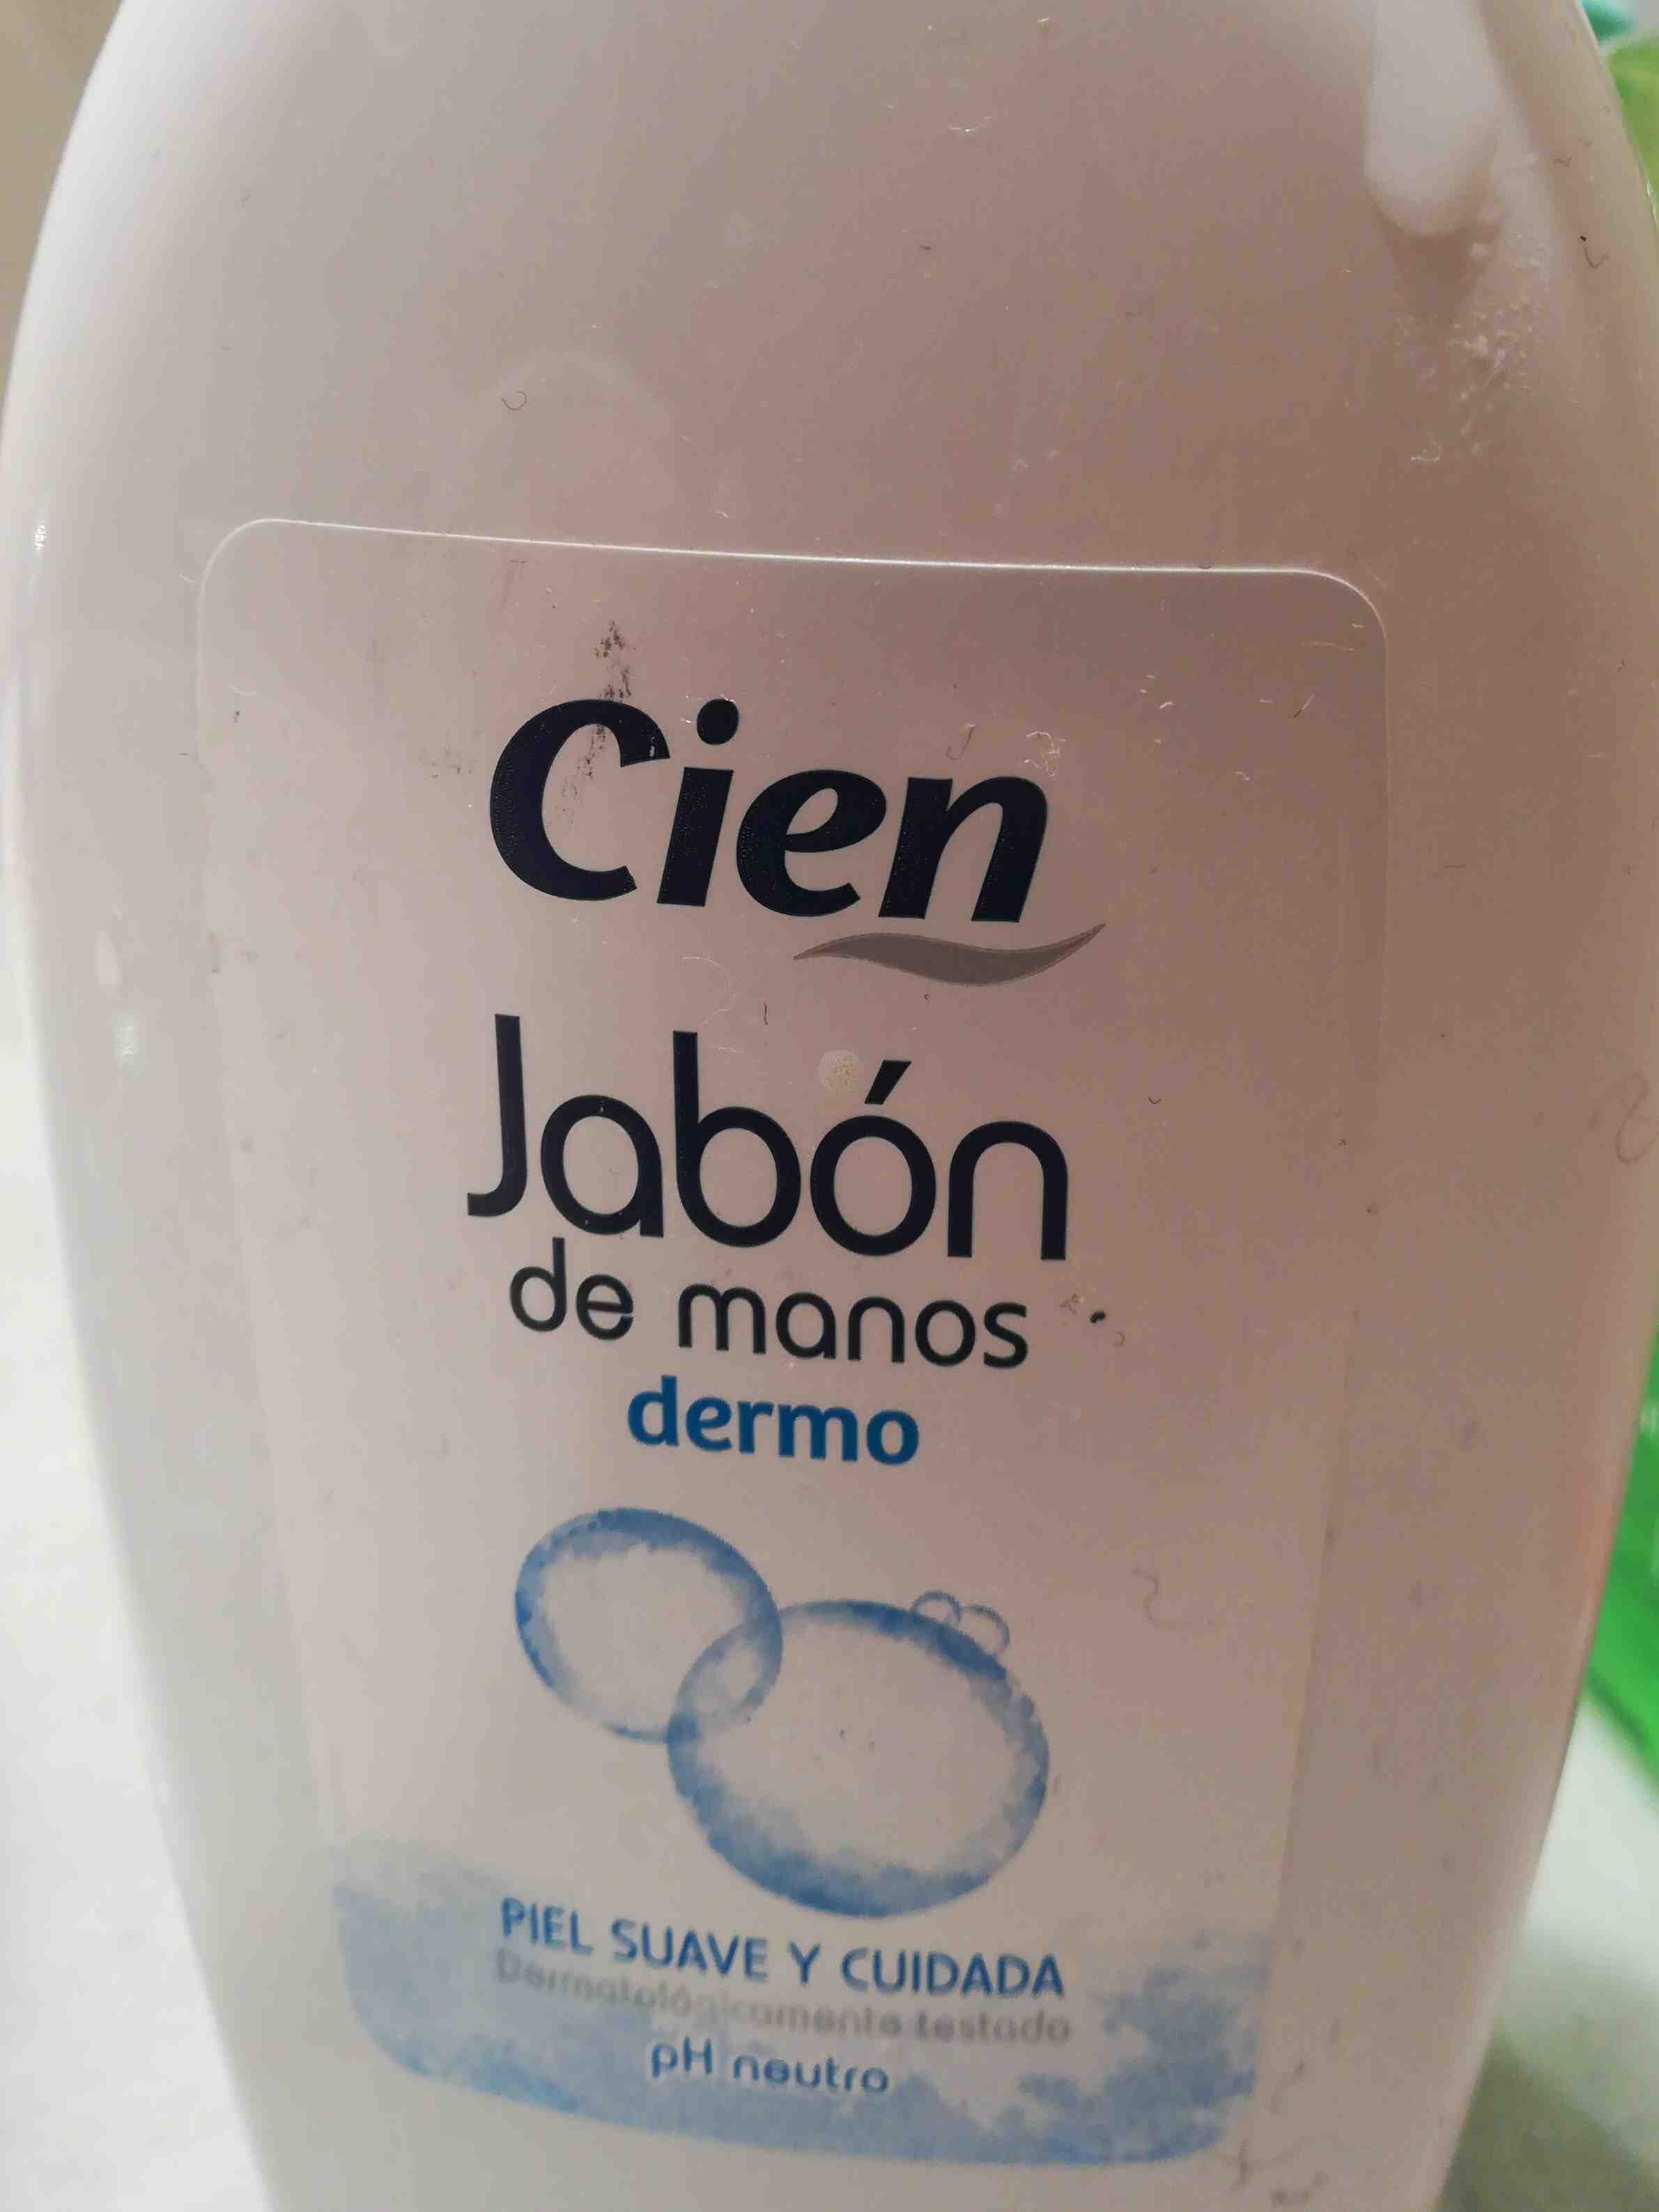 Jabon de manos - Produit - en